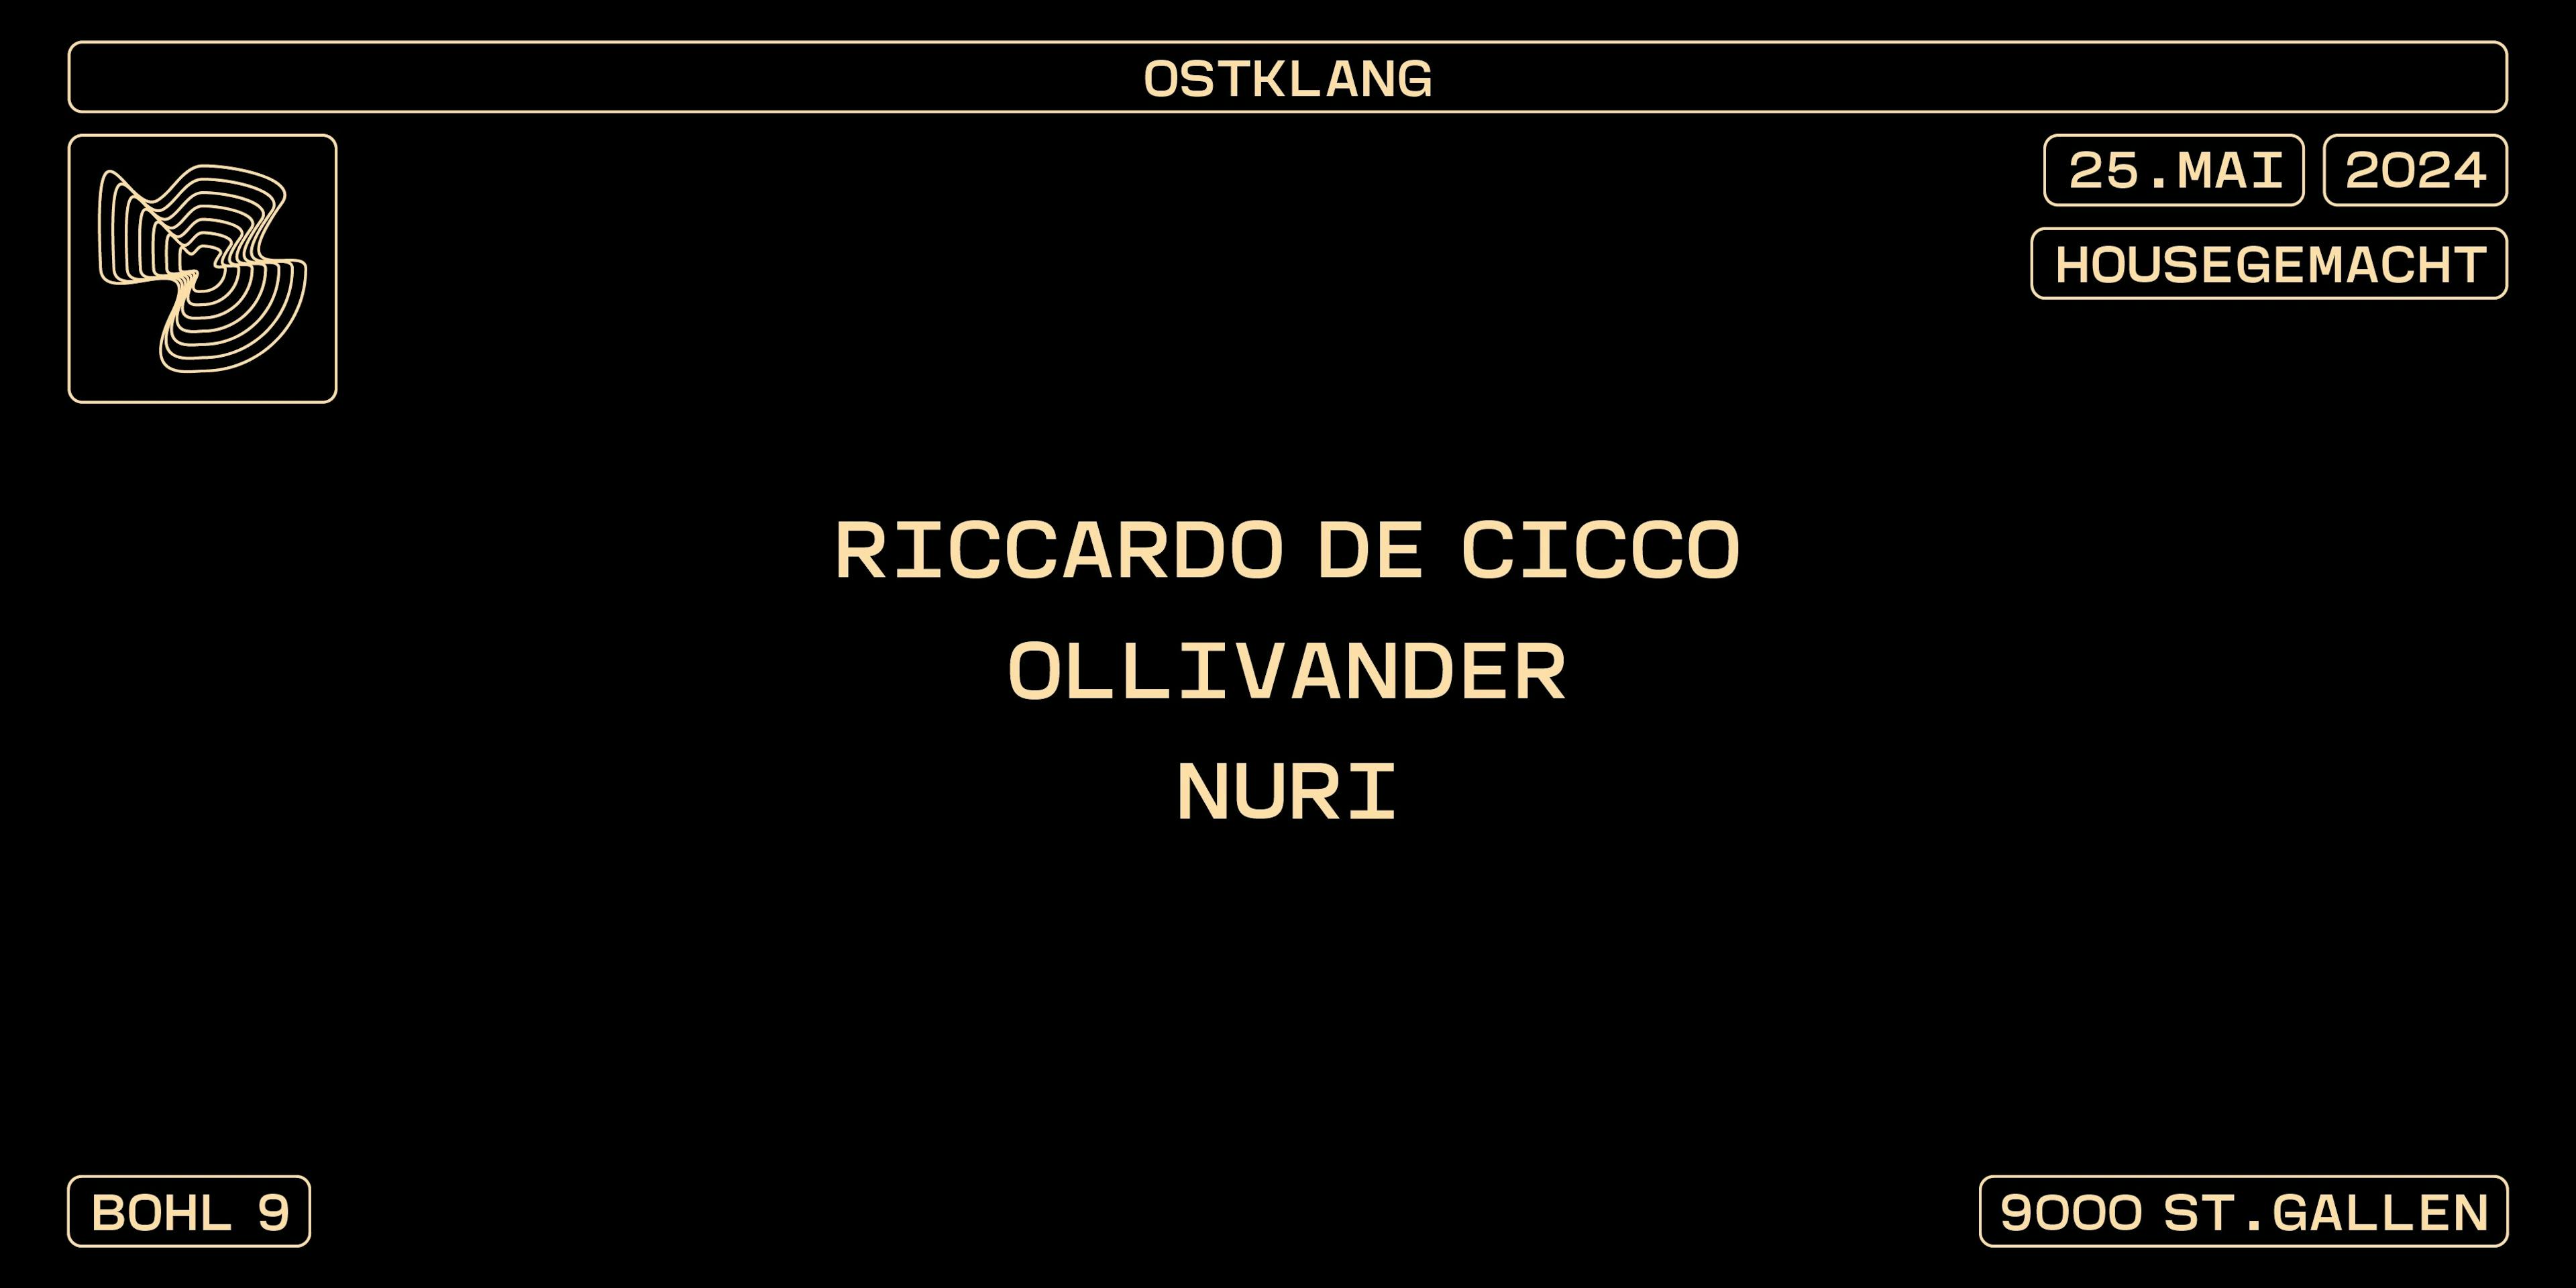 HOUSEGEMACHT mit RICCARDO DE CICCO, OLLIVANDER, NURI